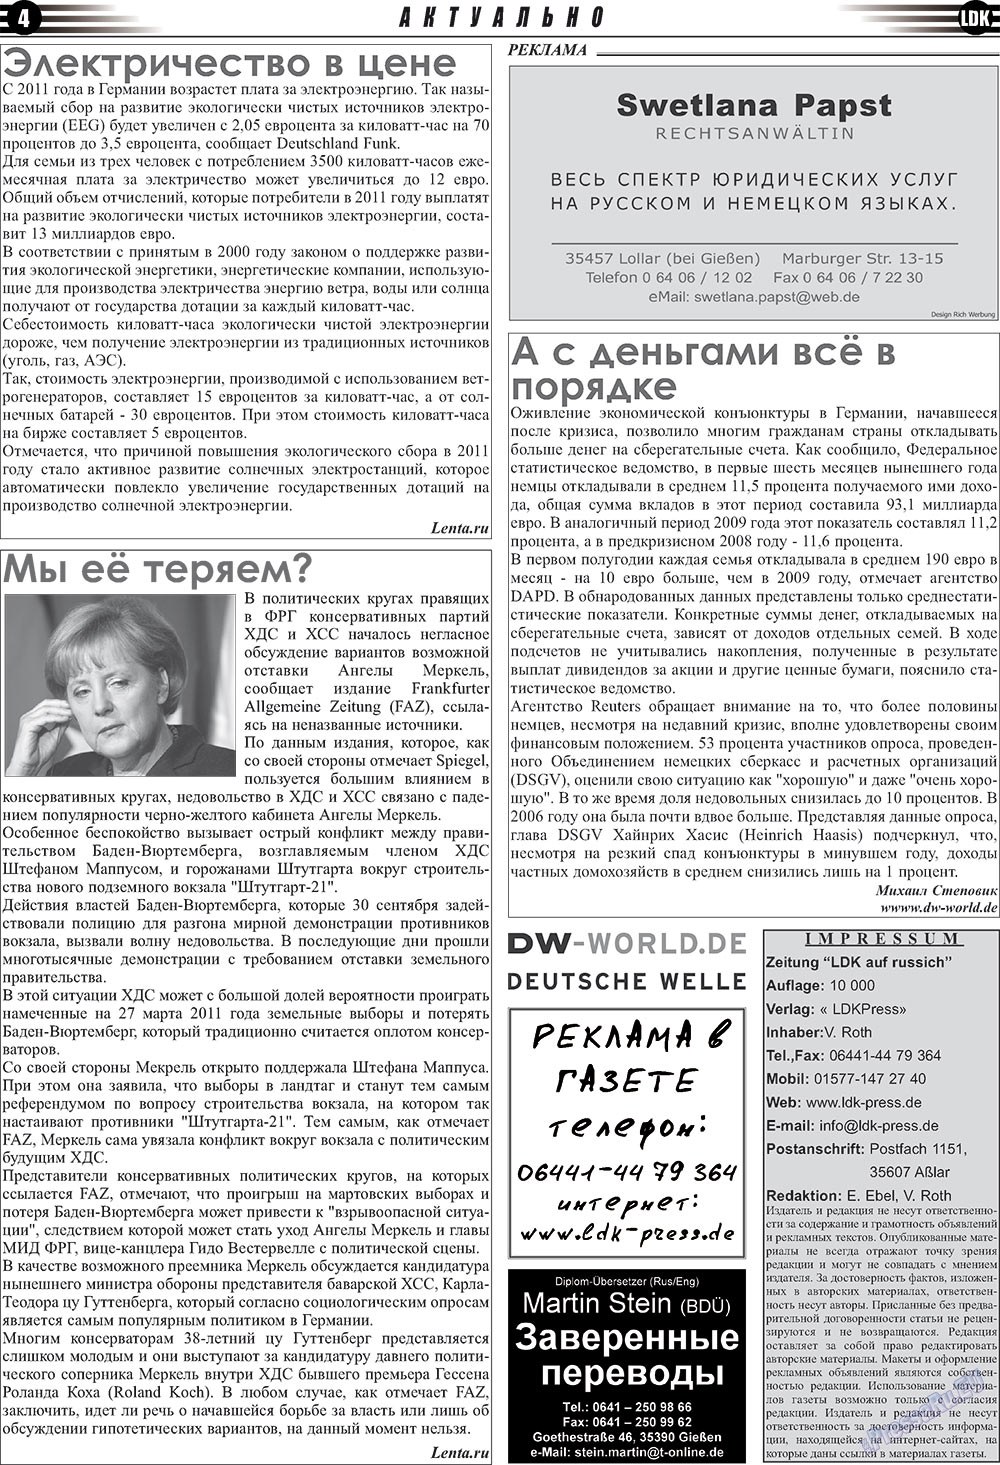 LDK по-русски (газета). 2010 год, номер 11, стр. 4